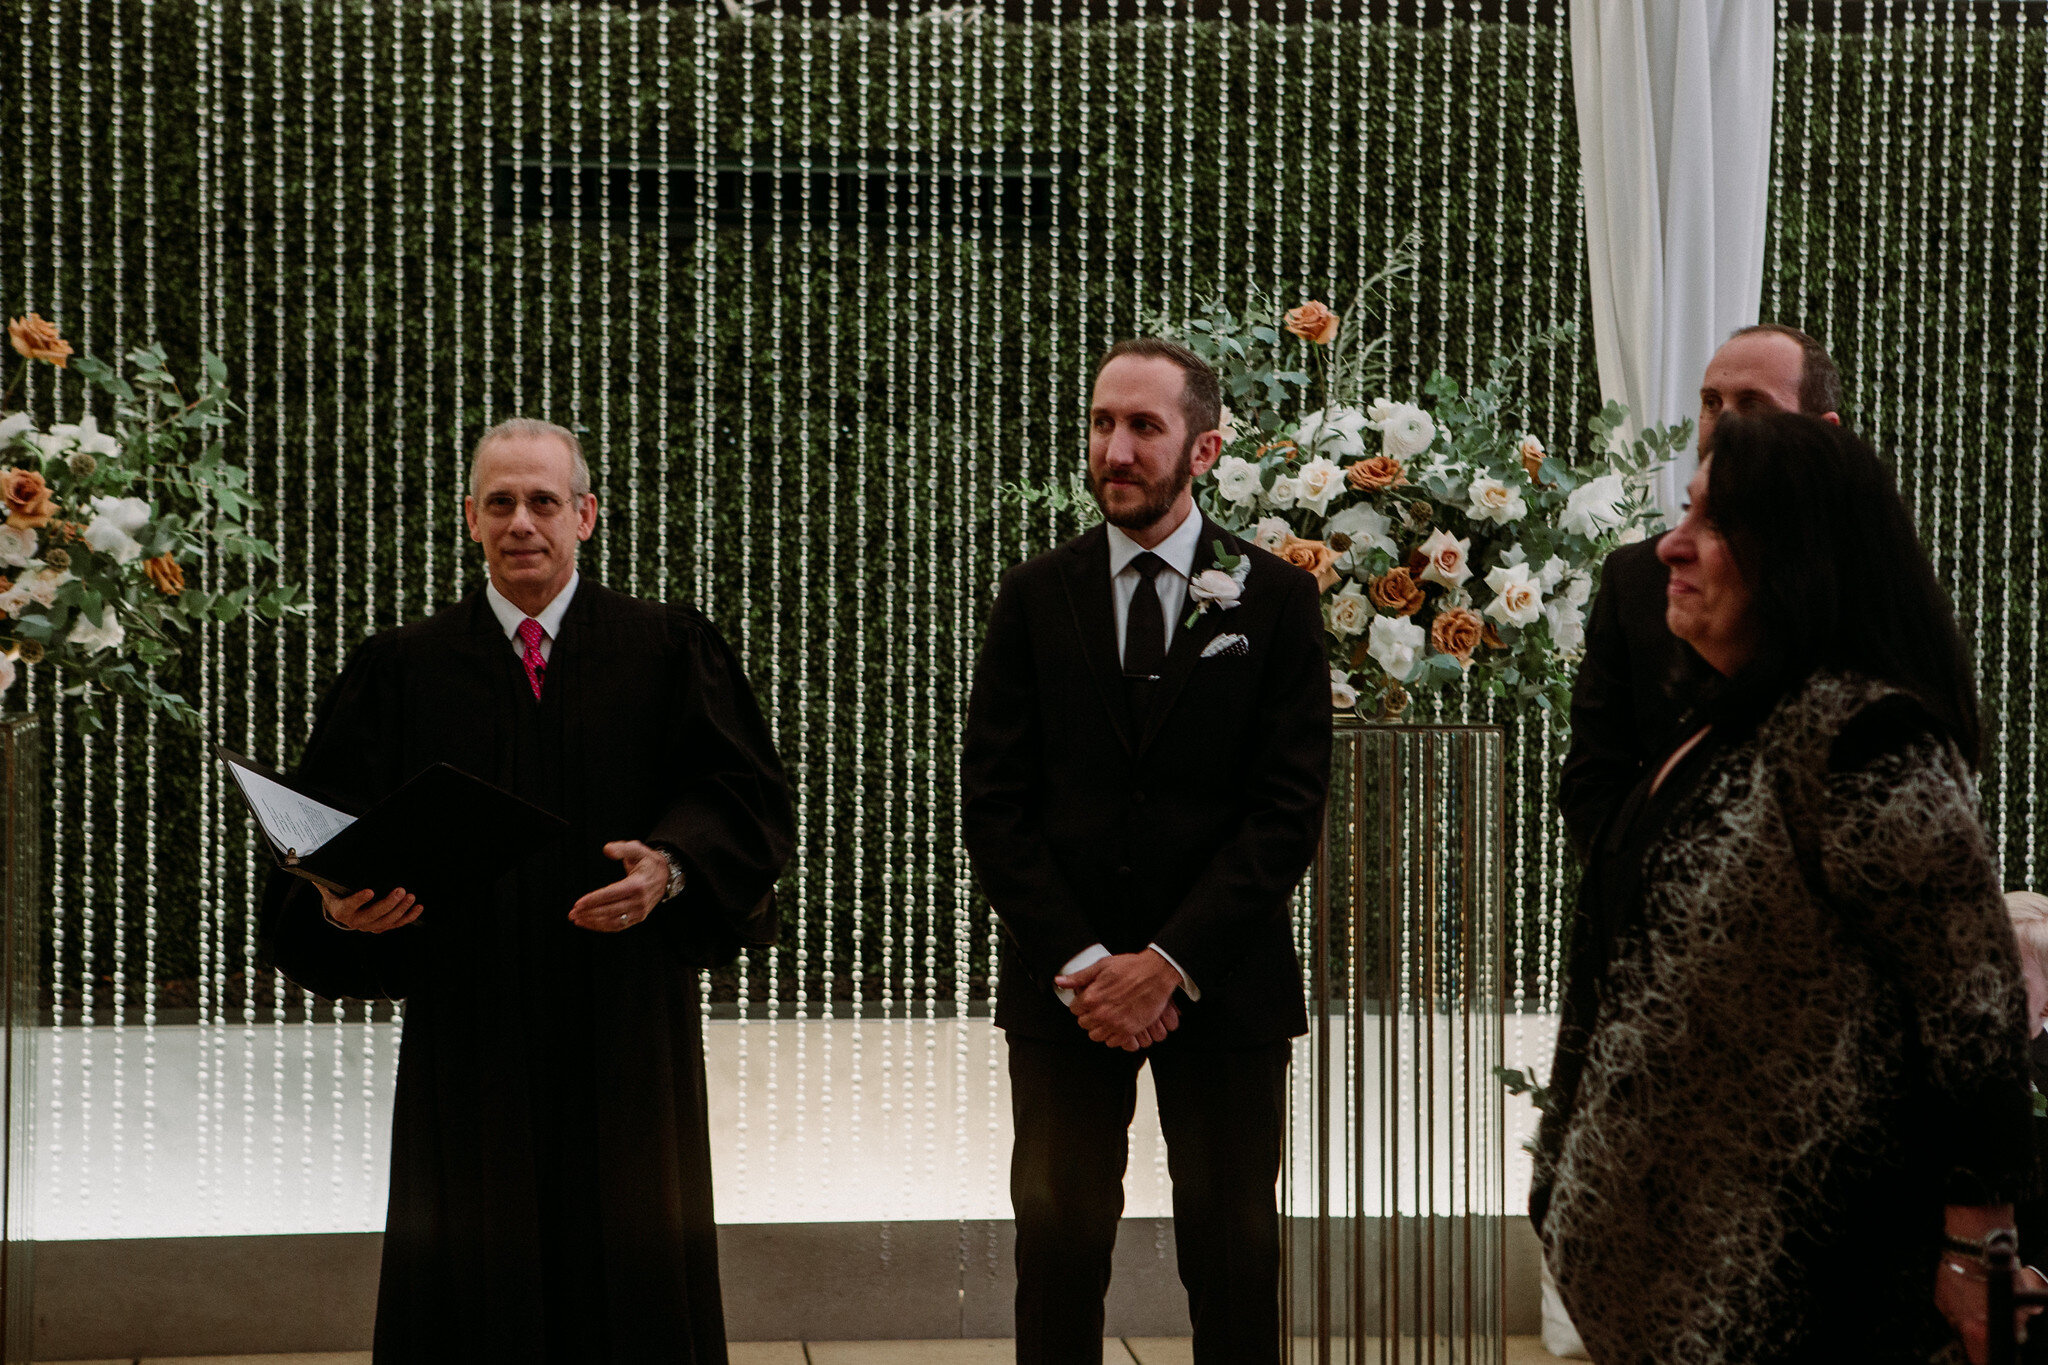 Wedding ceremony at The Sam Houston Hotel (Houston TX)